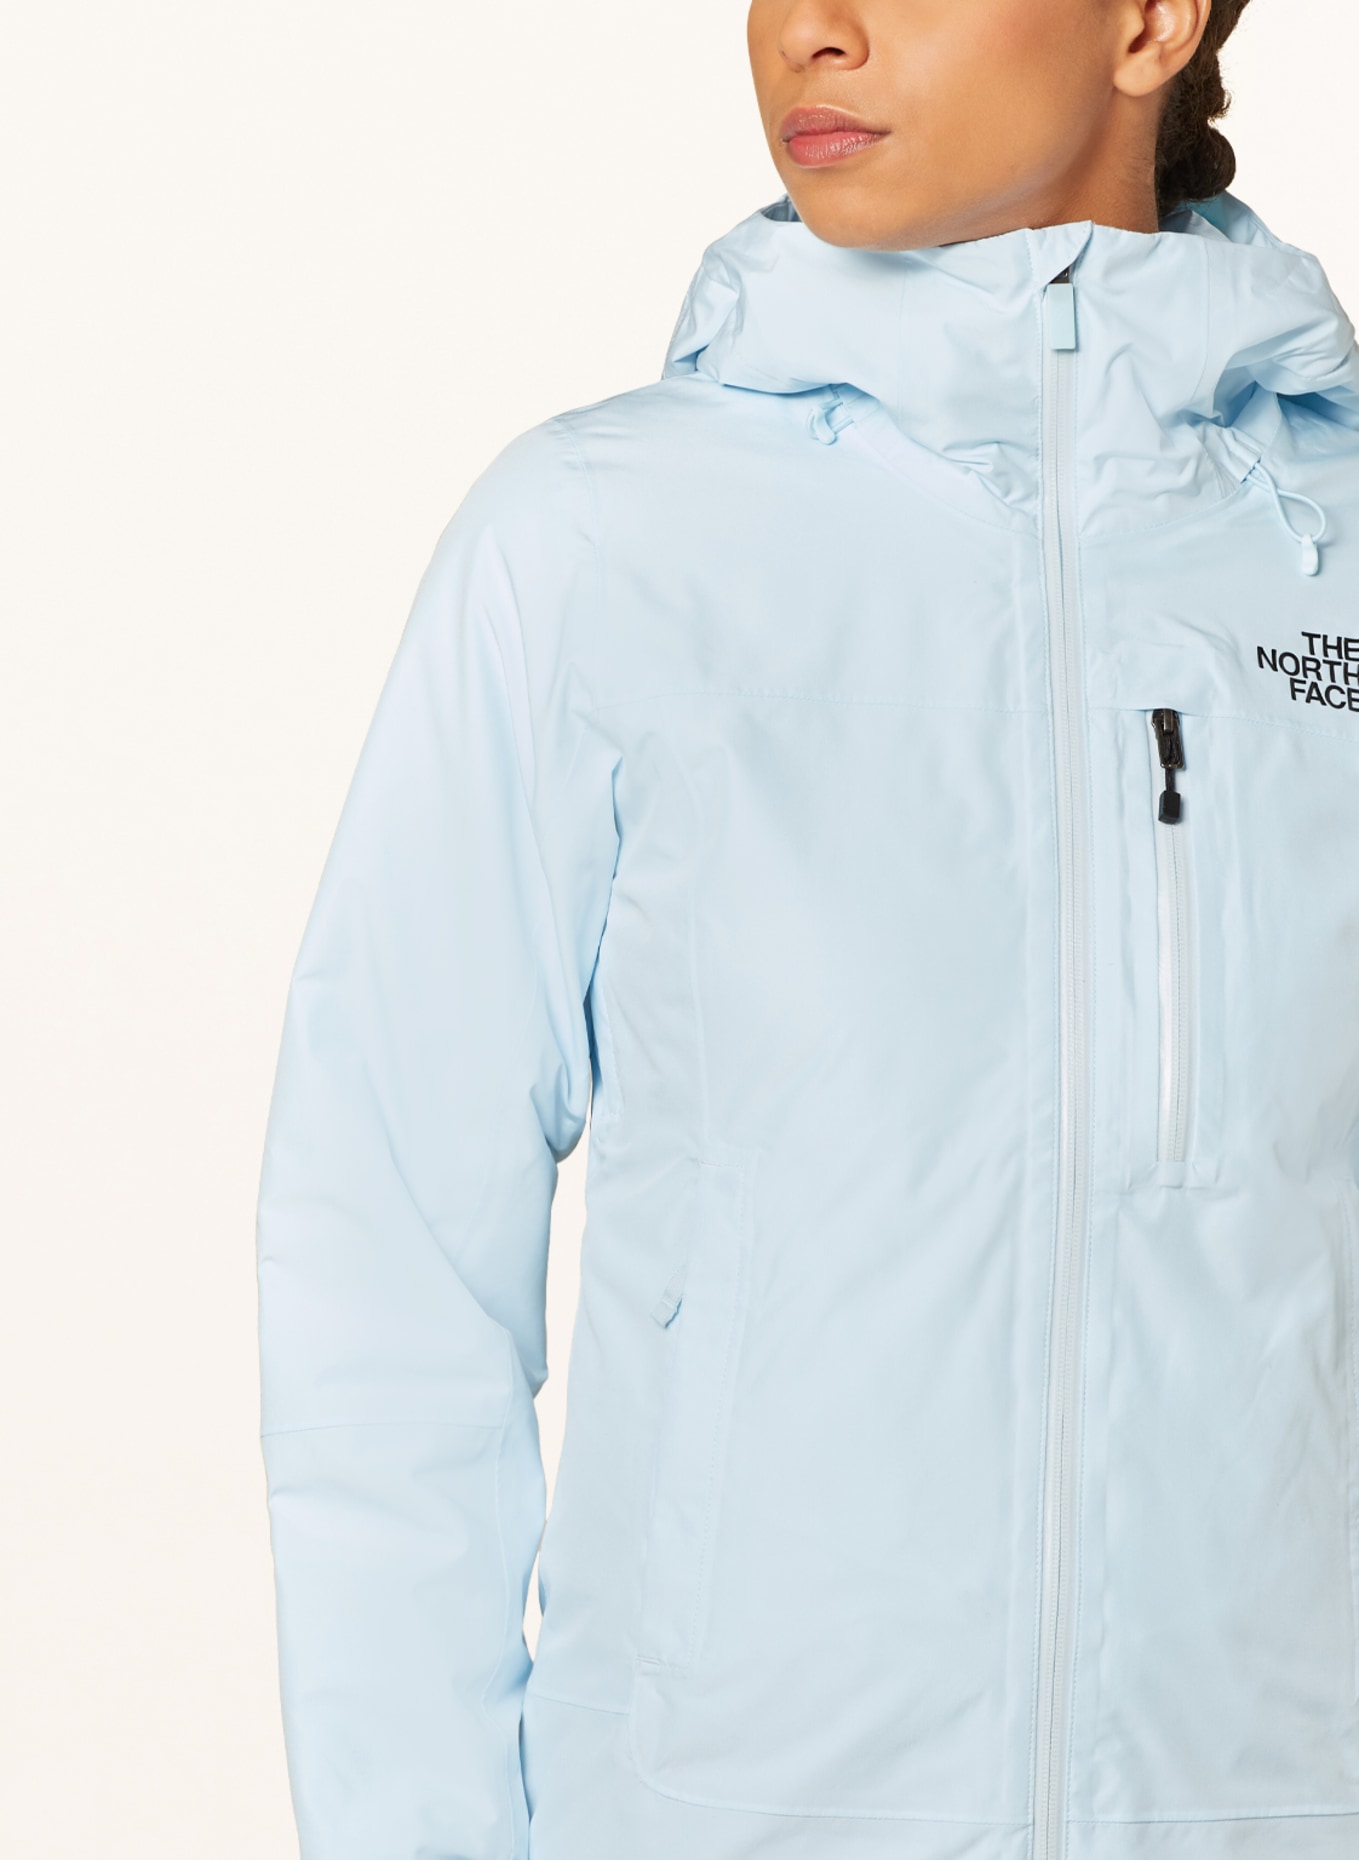 THE NORTH FACE Ski jacket DESCENDIT, Color: LIGHT BLUE (Image 5)